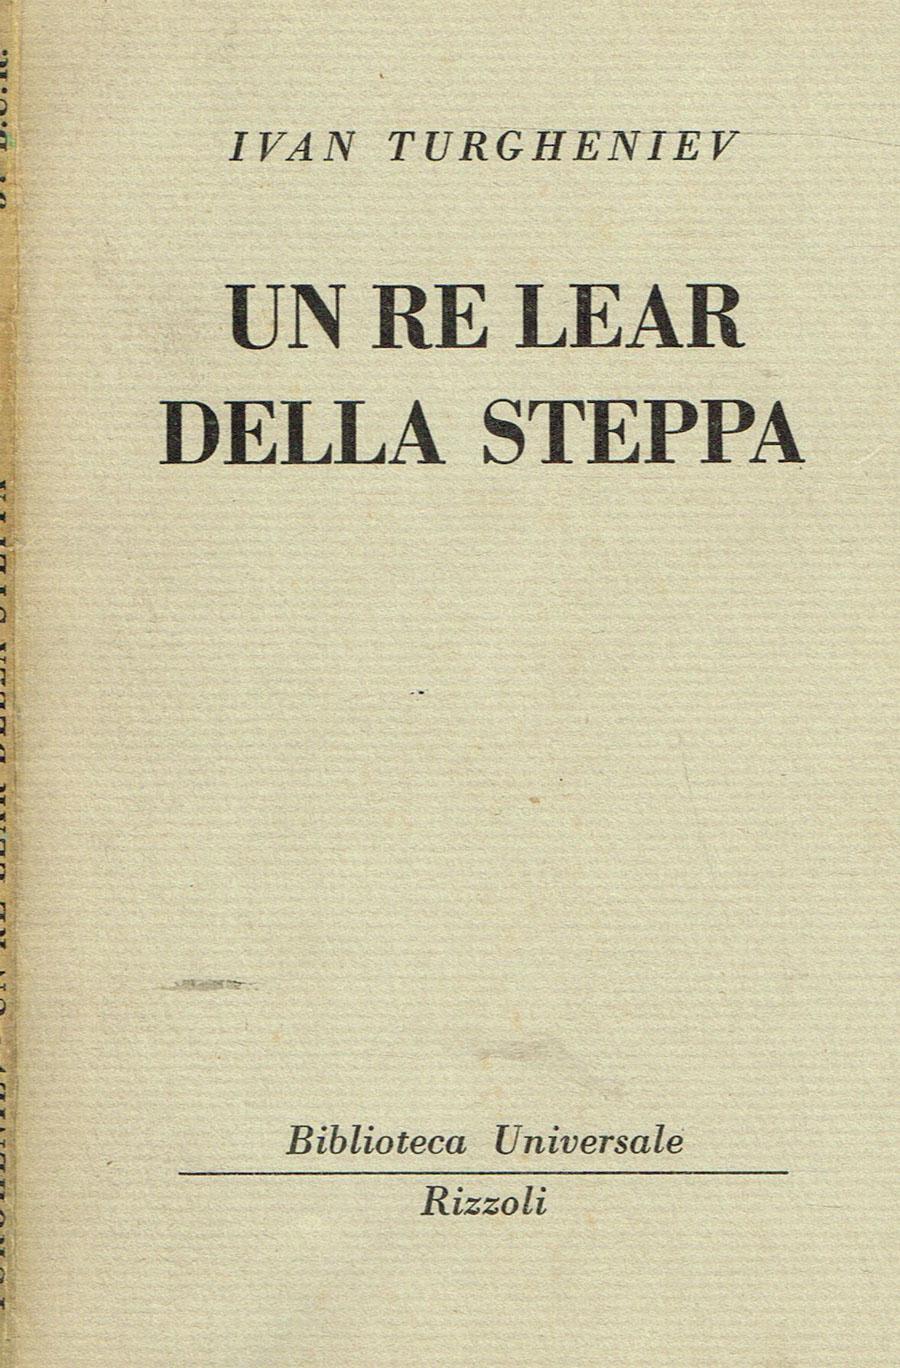 Un Re Lear della steppa (Biblioteca Universale Rizzoli/BUR/Rizzoli) (image)